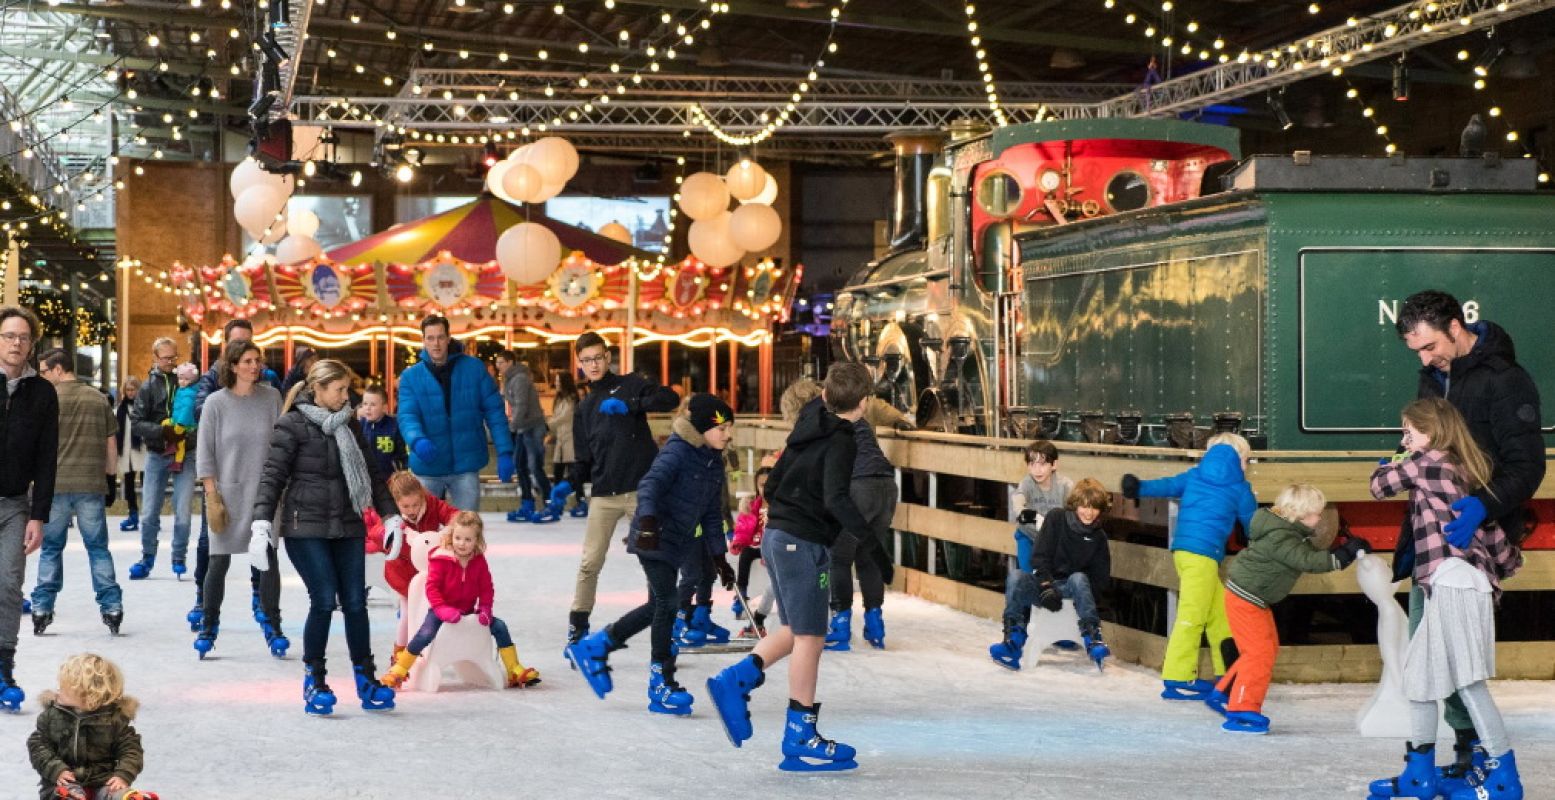 Geniet in de kerstvakantie van winterse gezelligheid in Het Spoorwegmuseum, met als hoogtepunt de schaatsbaan. Foto: Het Spoorwegmuseum.